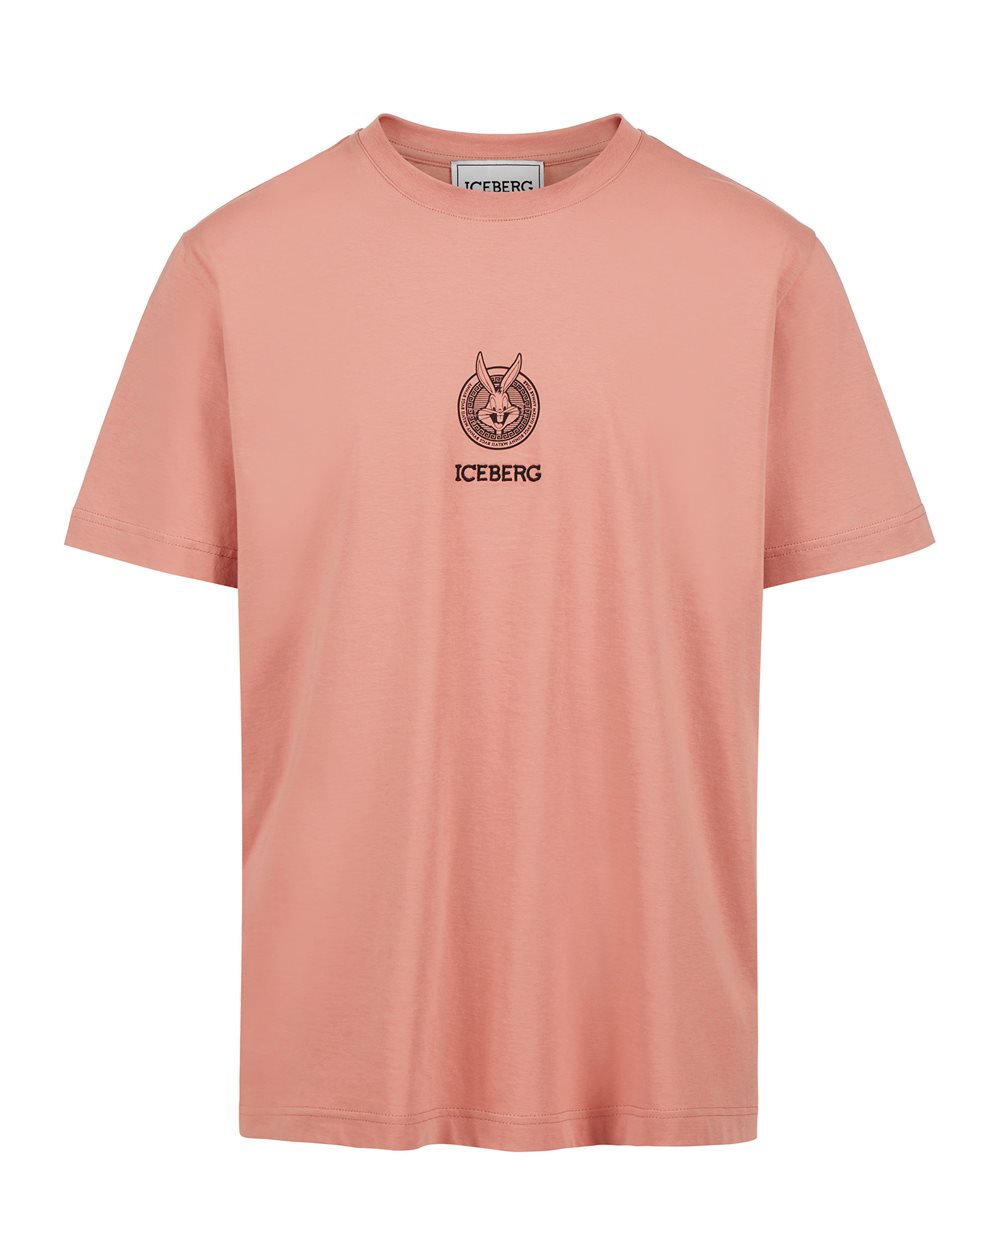 Stone Island T-Shirt, Peach